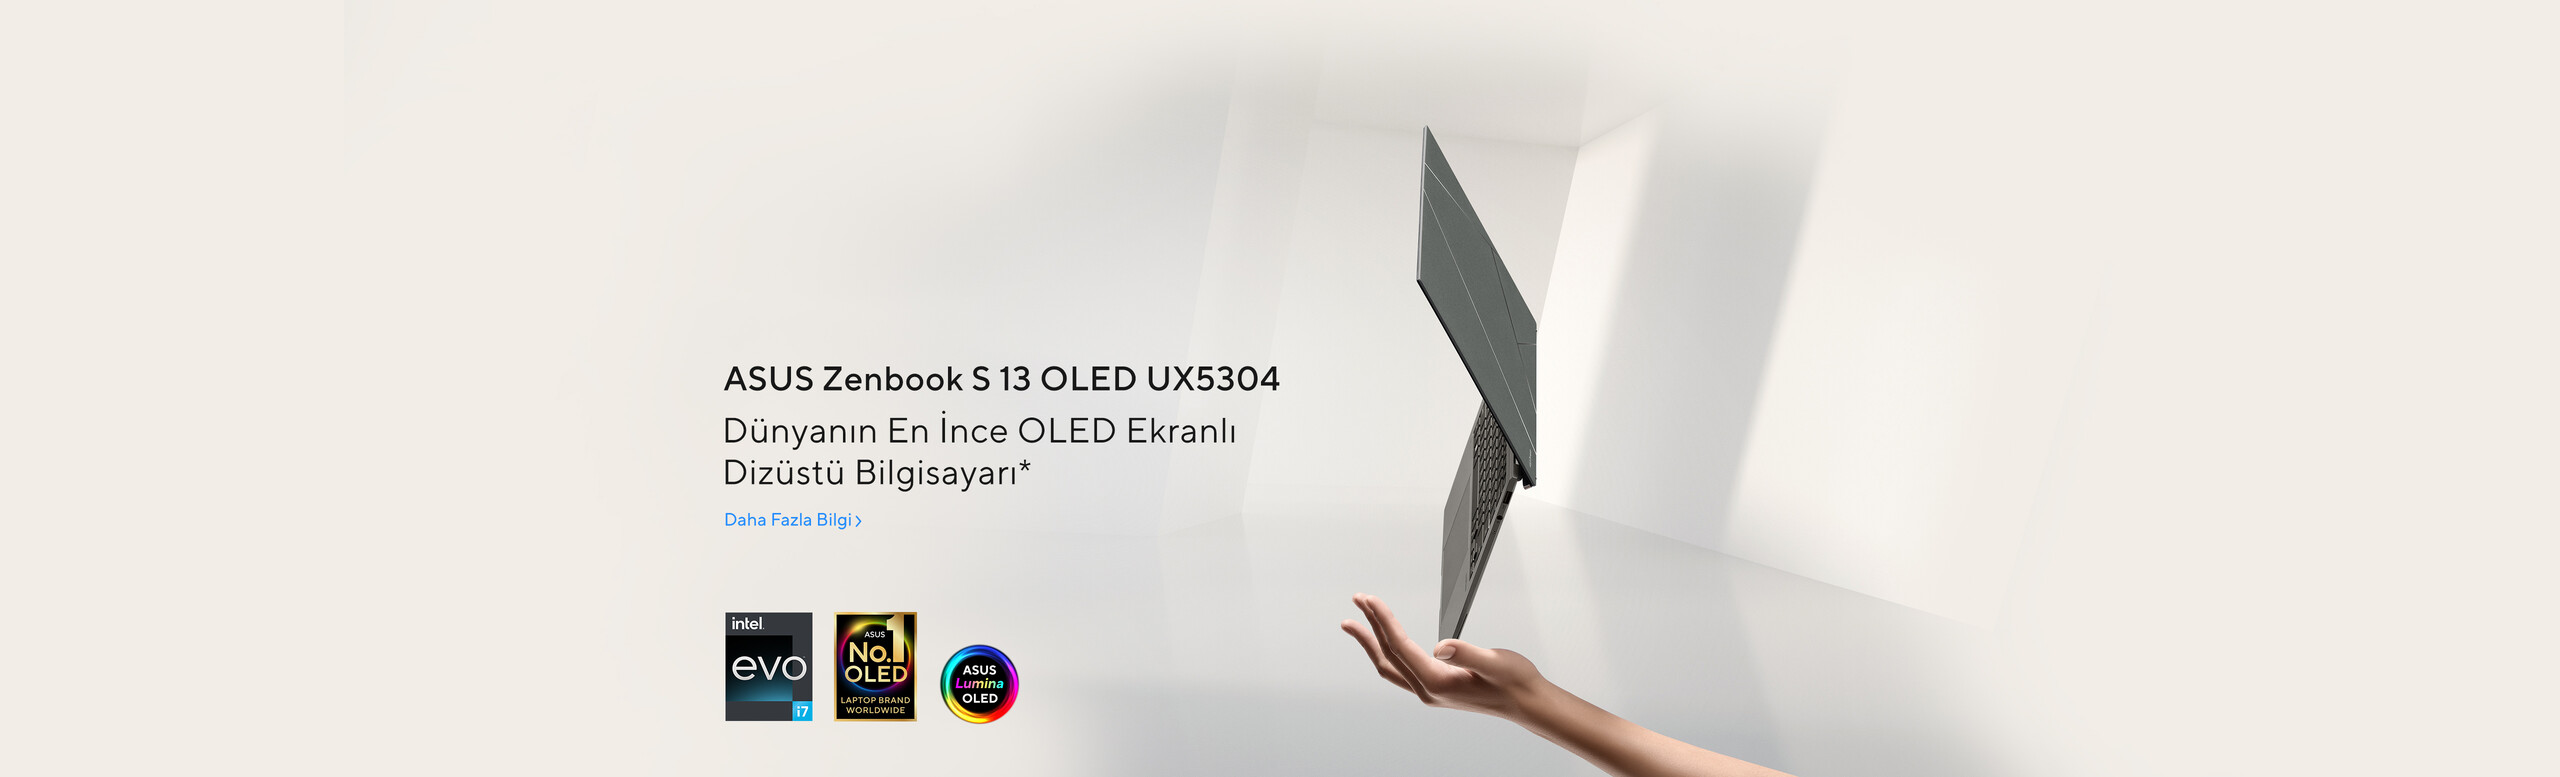 Dünyanın en ince oled ekranlı dizüstü bilgisayarı ZenBook S13 OLED UX5304!